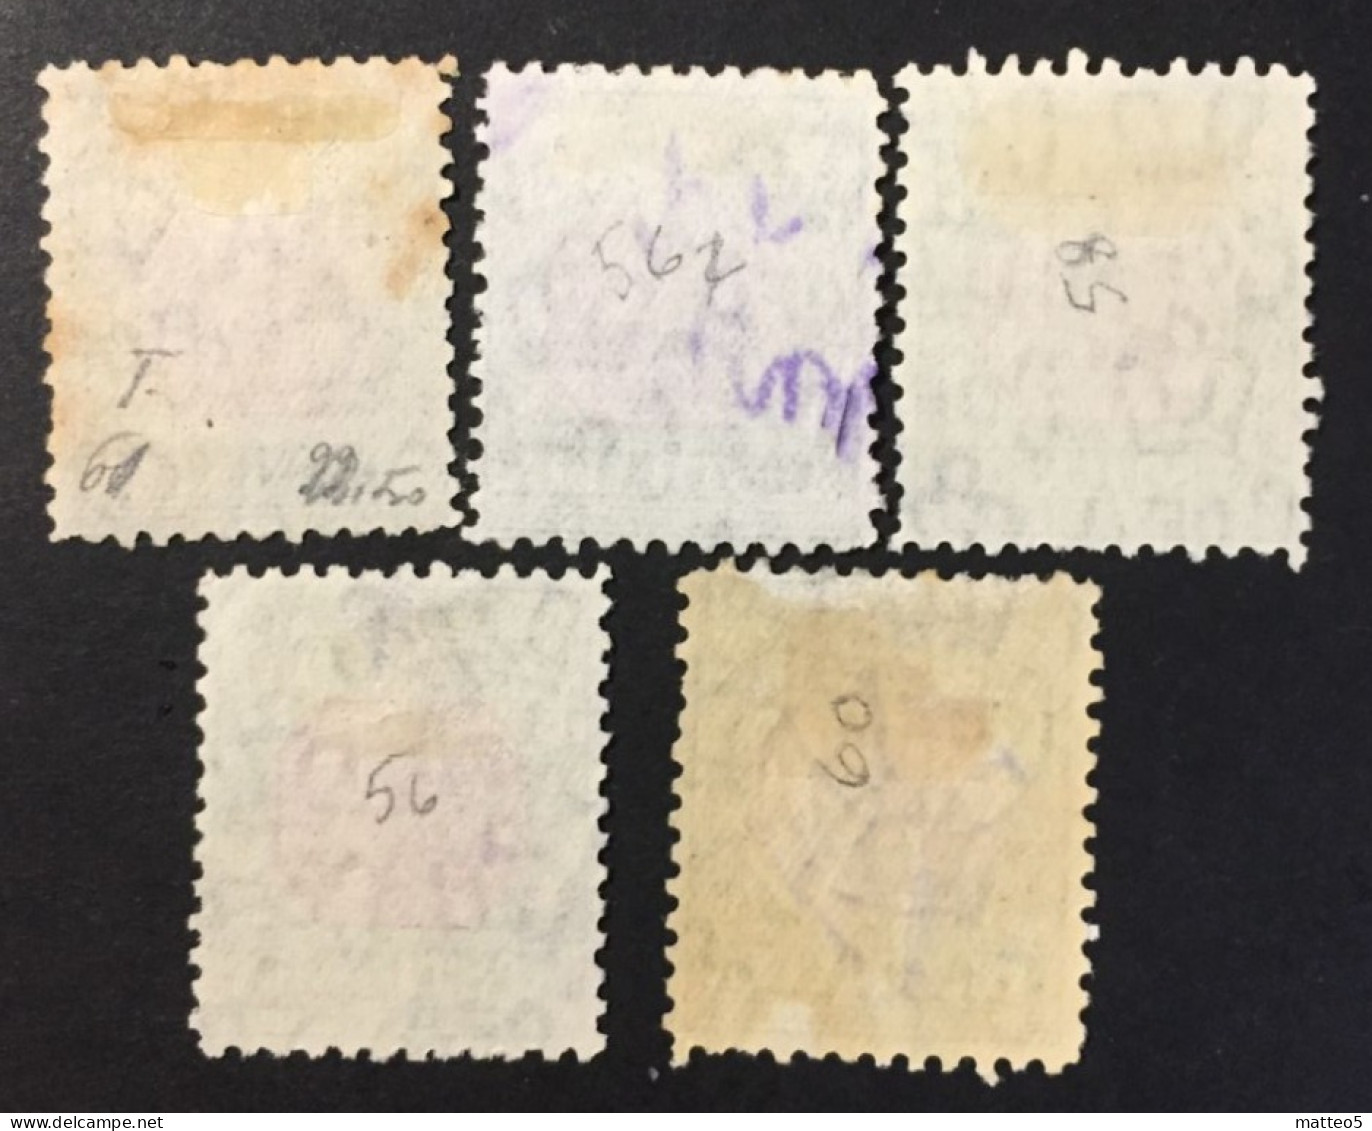 1932 /38 - Australia - Postage Due Stamp - 1D,2D,1/2D,4D,1/ - Used - Portomarken